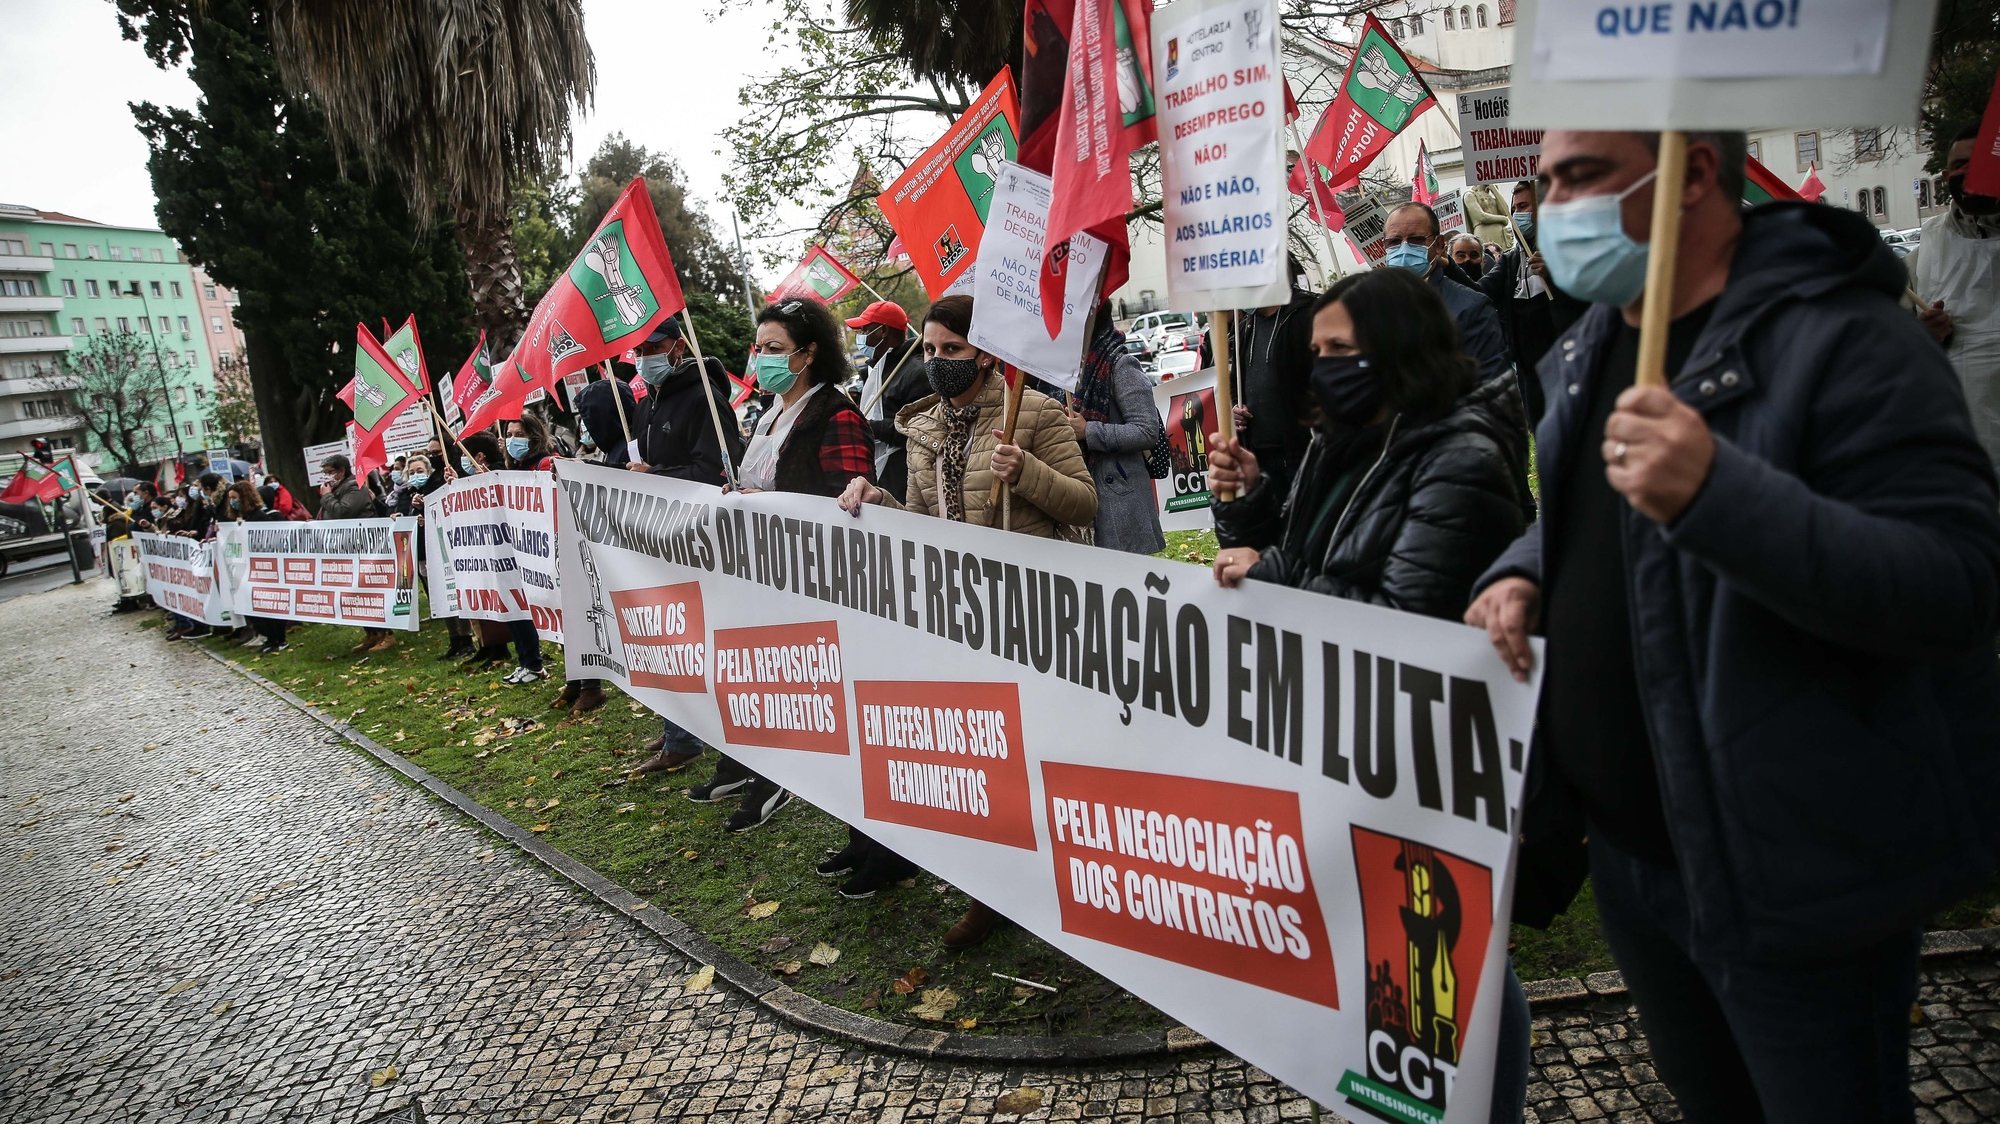 Manifestação nacional de trabalhadores da restauração e hotelaria para exigir medidas de apoio aos trabalhadores da restauração, bebidas e alojamento, frente ao Ministério do Trabalho, em Lisboa, 10 de dezembro de 2020. MÁRIO CRUZ/LUSA